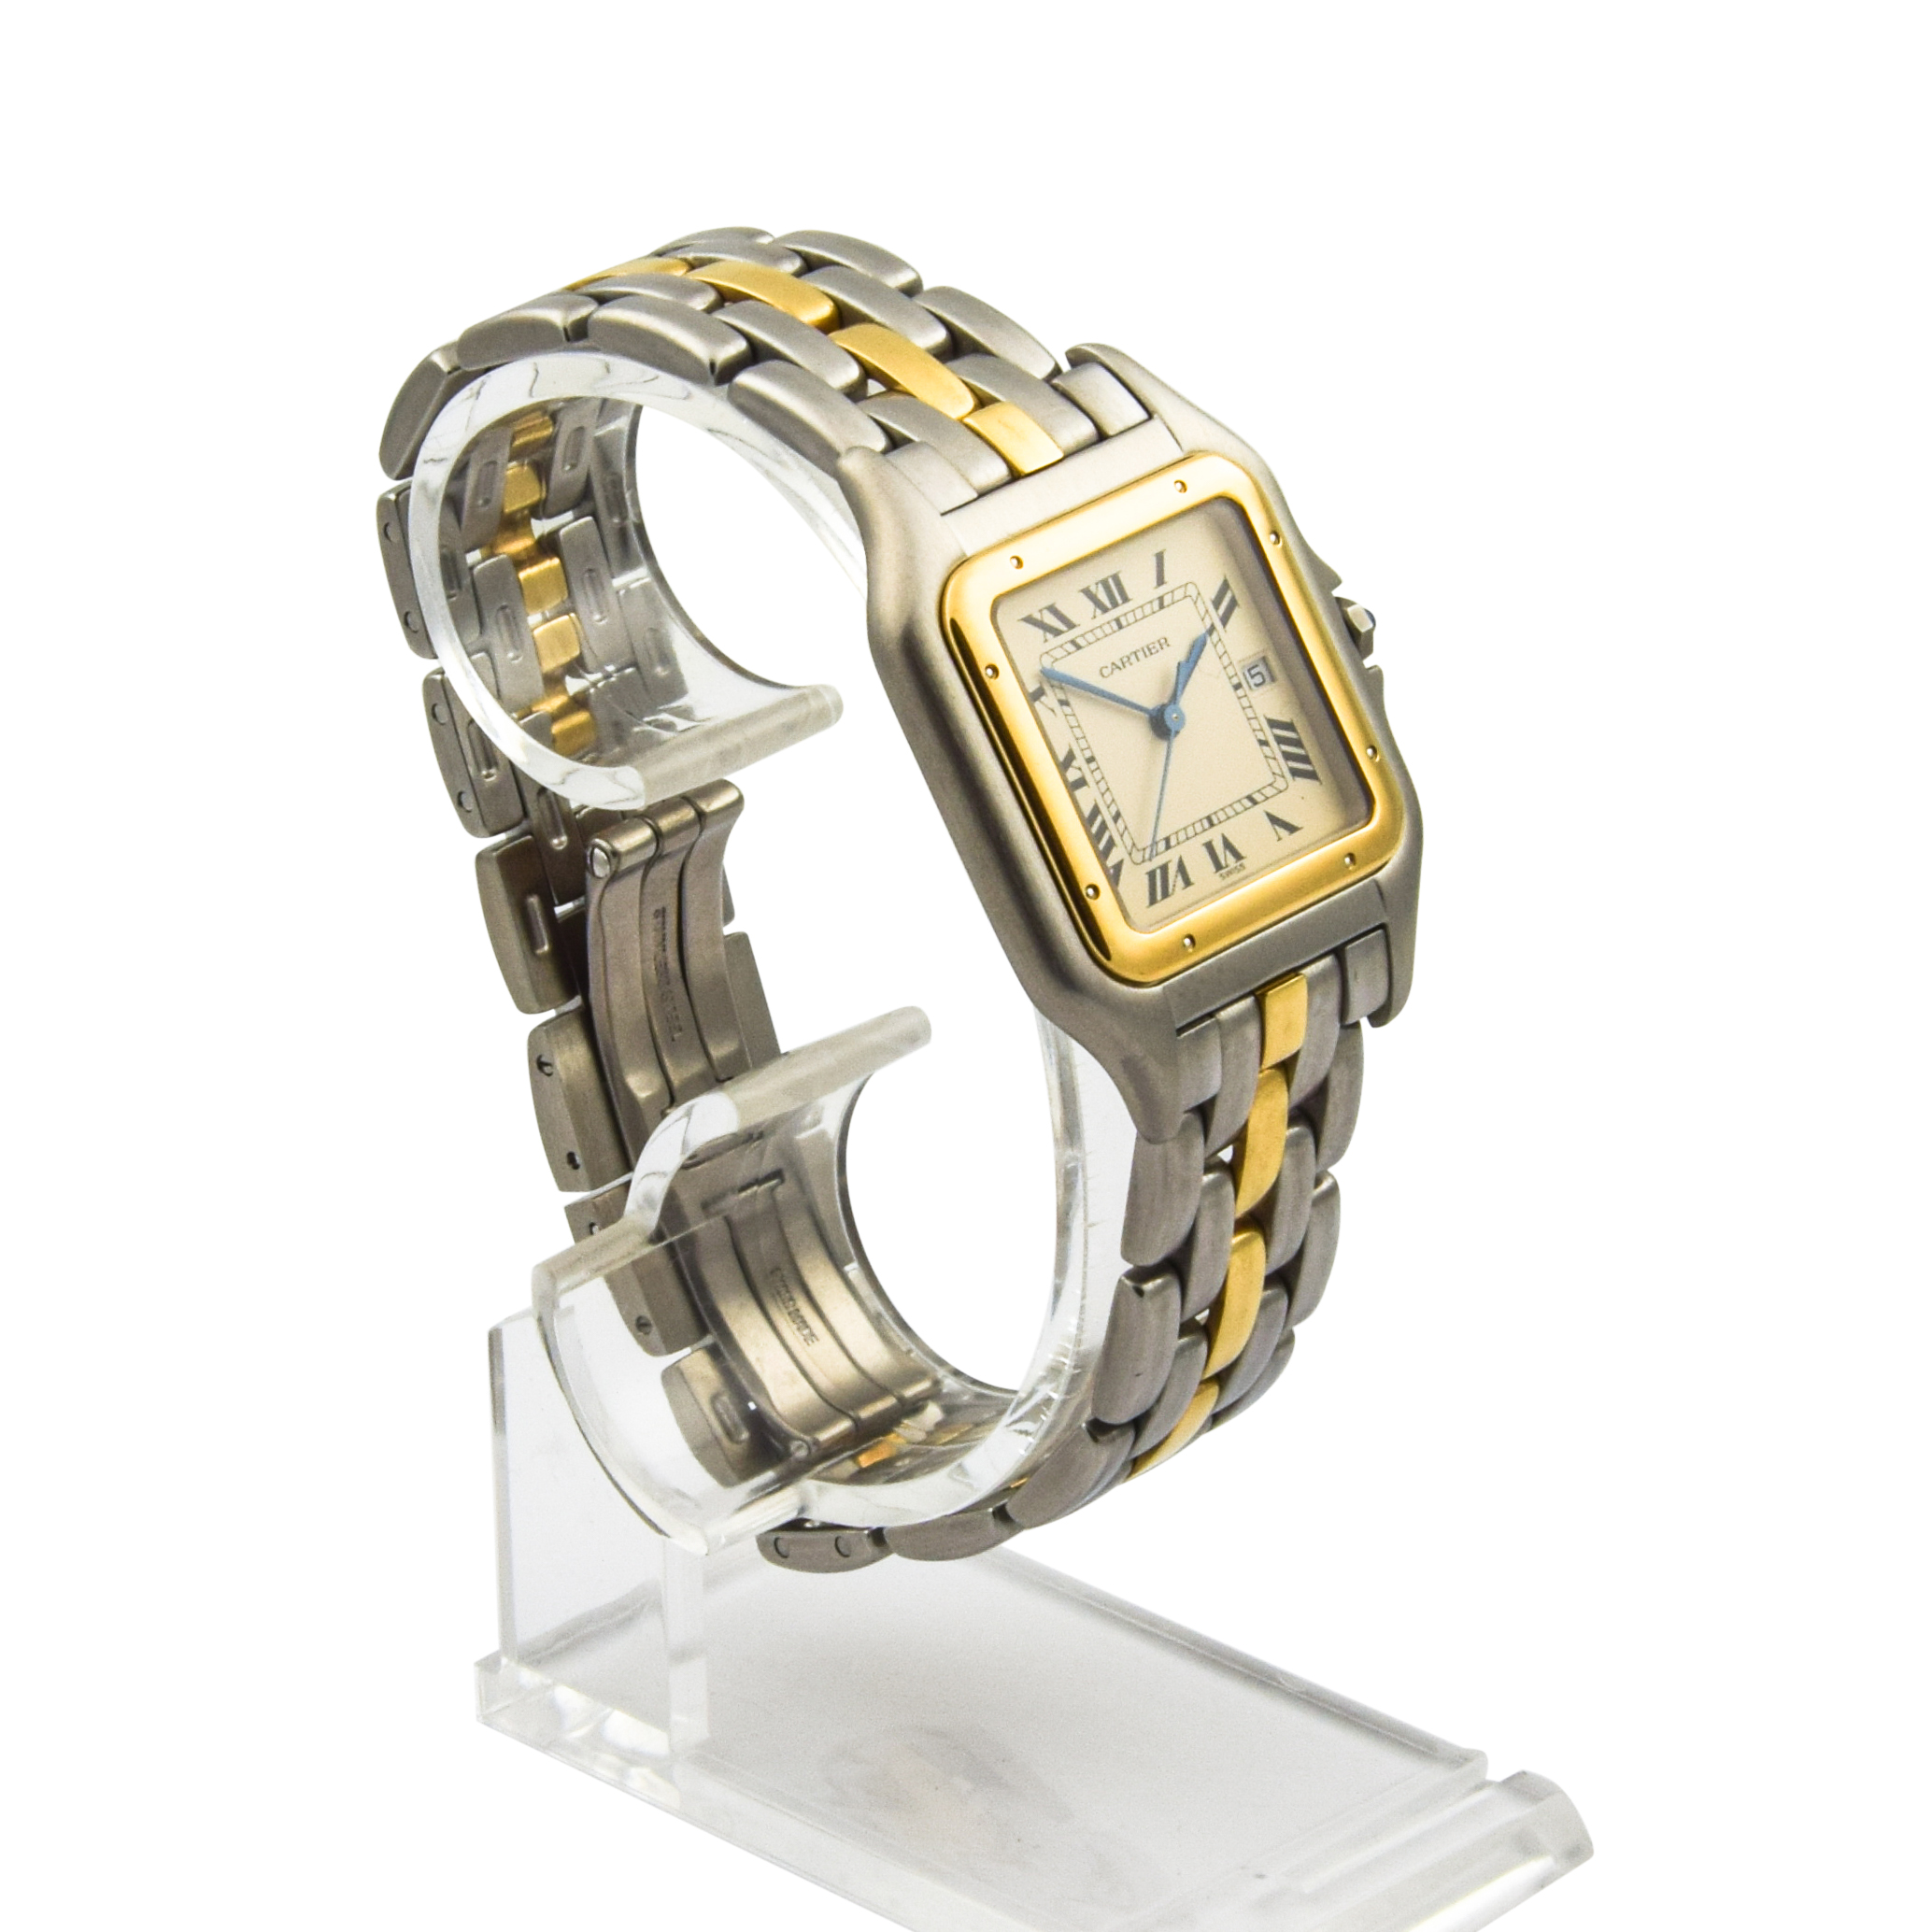 Cartier Armbanduhr Panthere Quarzwerk mit Datumsanzeige und Zentralsekunde, gebrauchte Luxusuhr im Top-Zustand